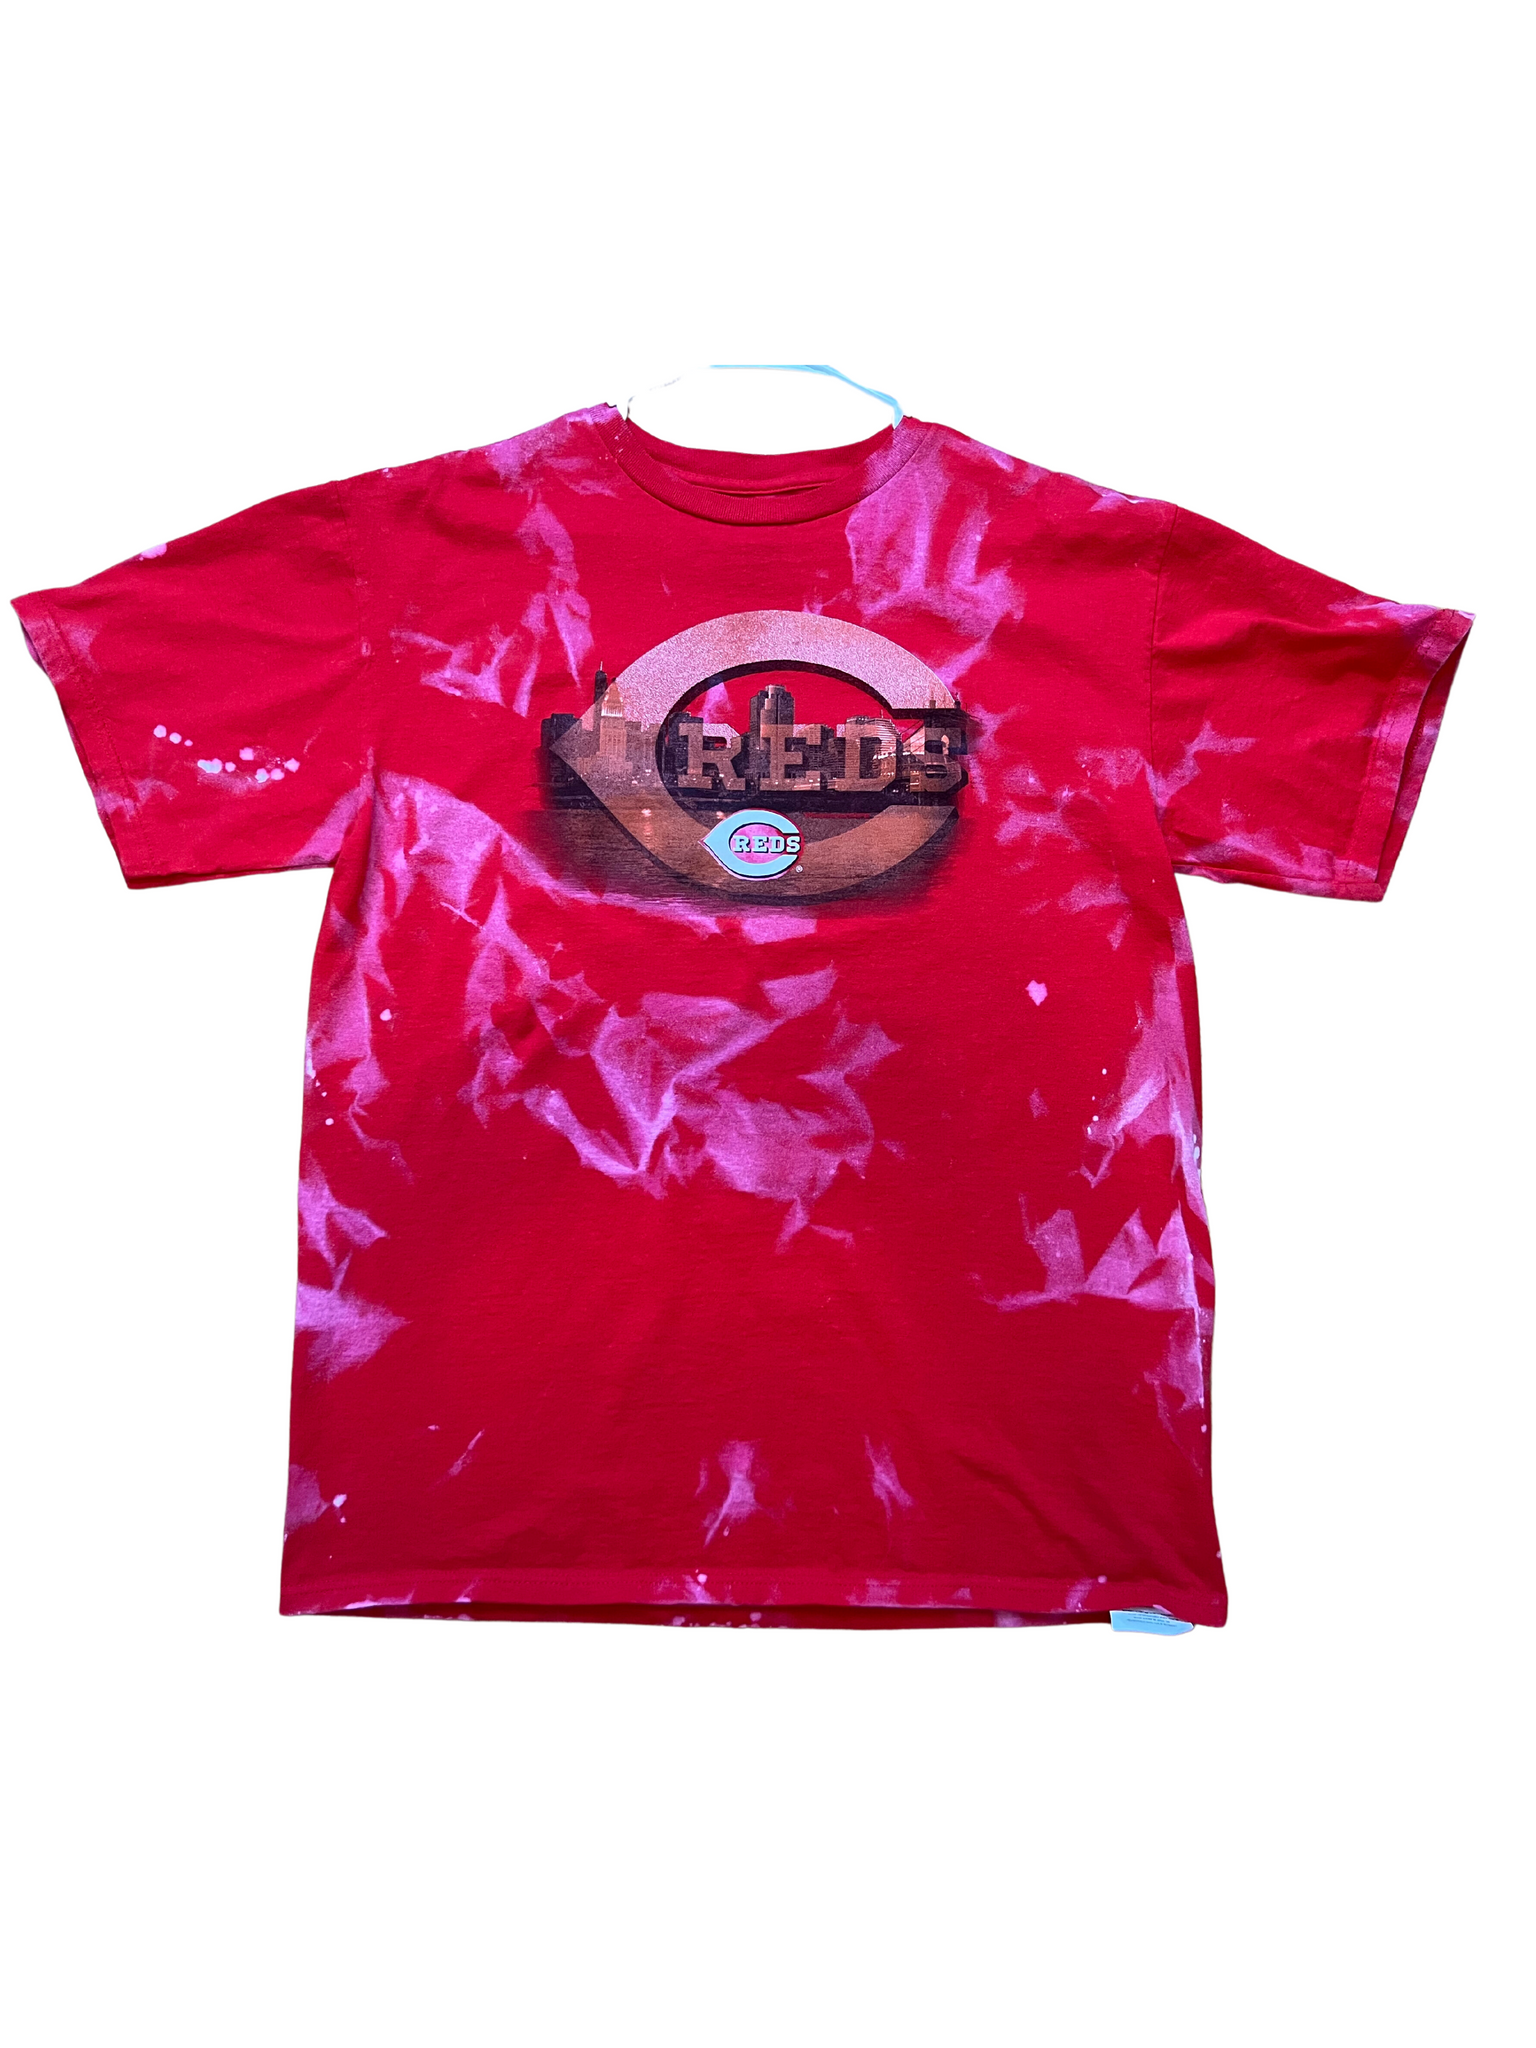 TheSwiftArrow Bleach Dyed Cincinnati Reds Long Sleeve T-Shirt - 2XL